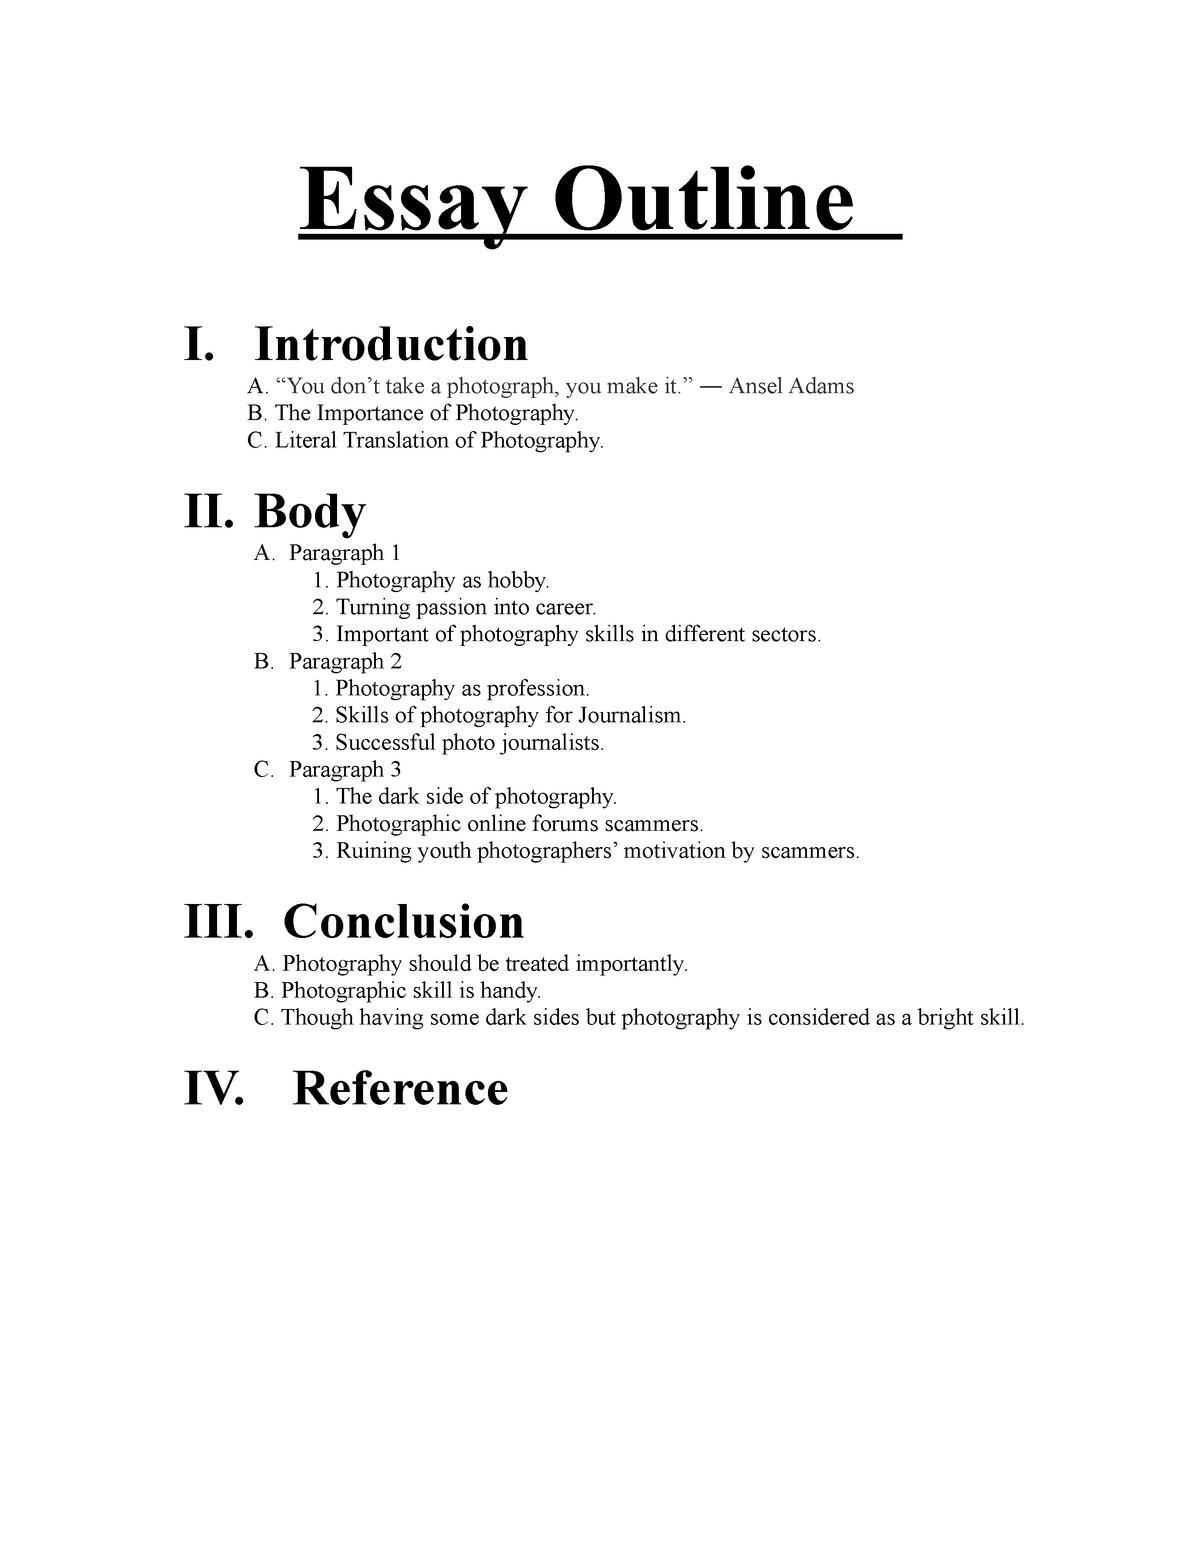 Do english essay outline